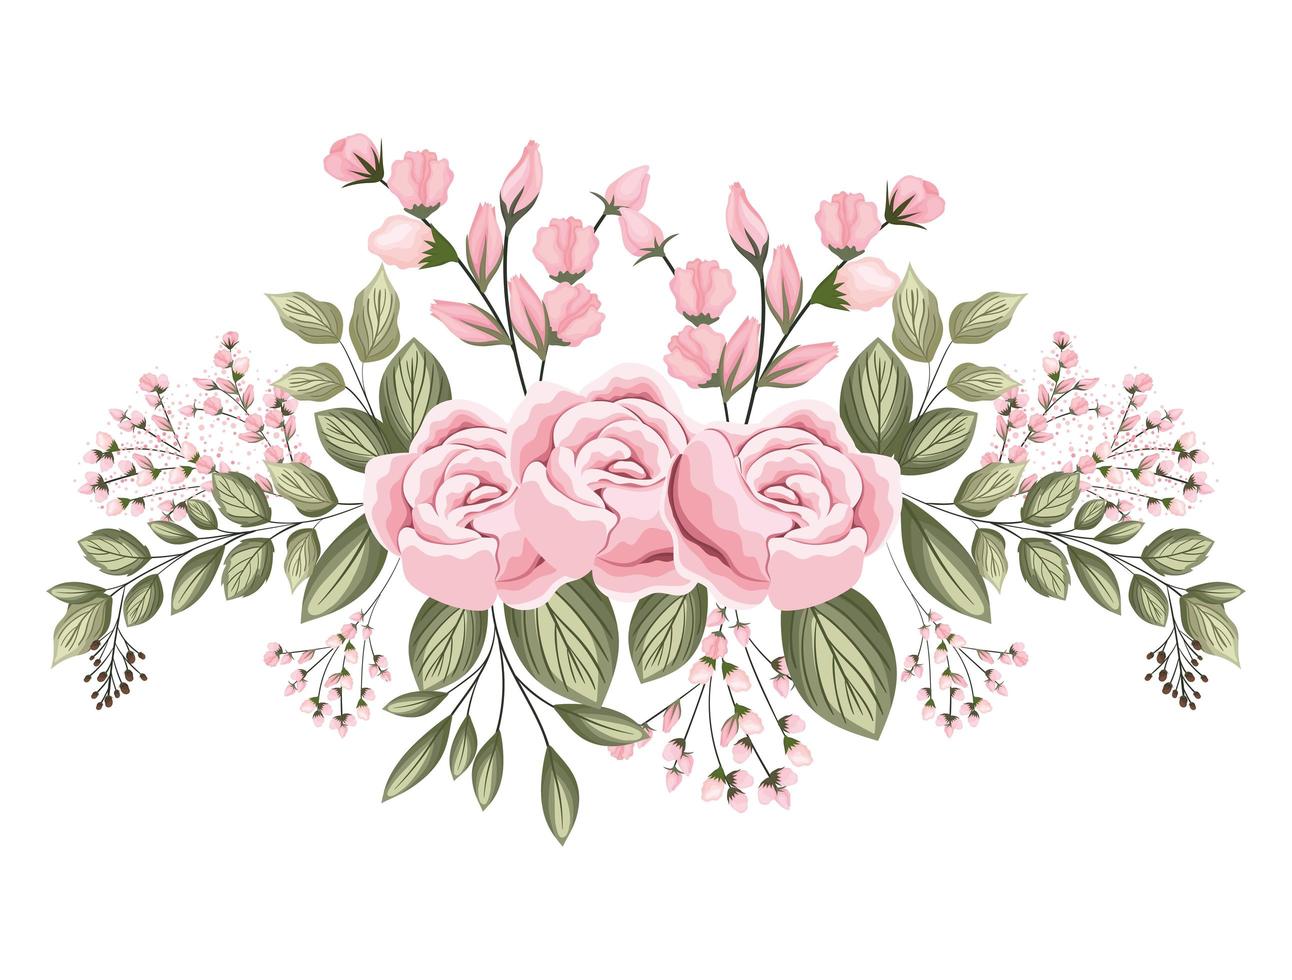 flores rosas cor de rosa com botões e folhas pintando vetor